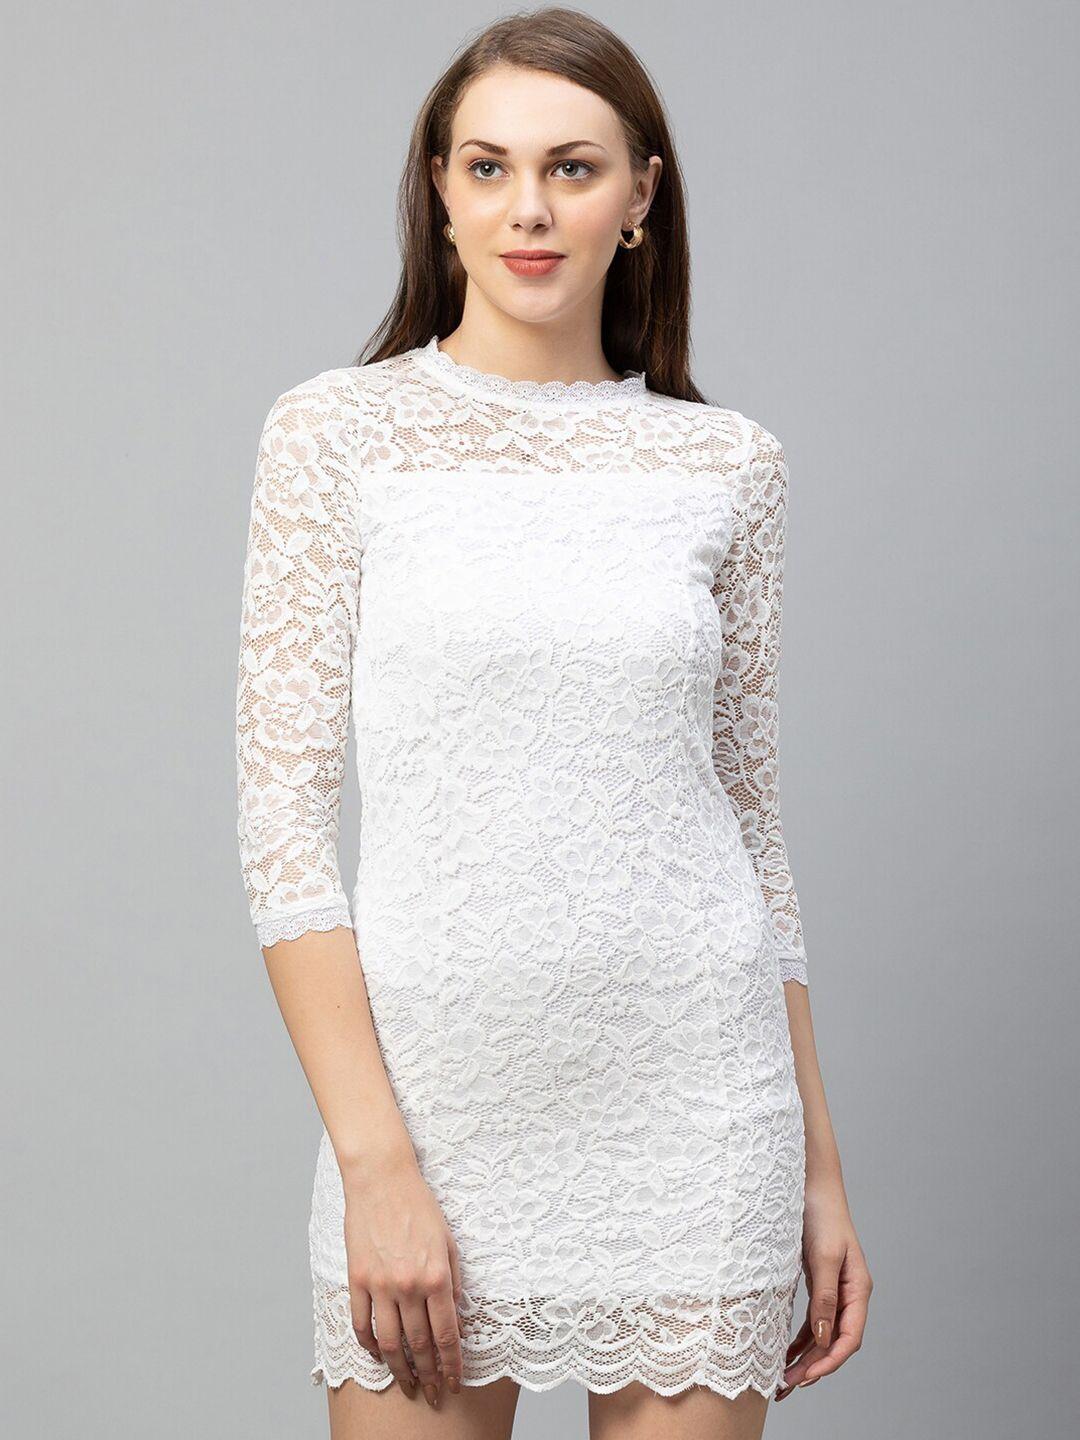 globus-white-lace-sheath-dress